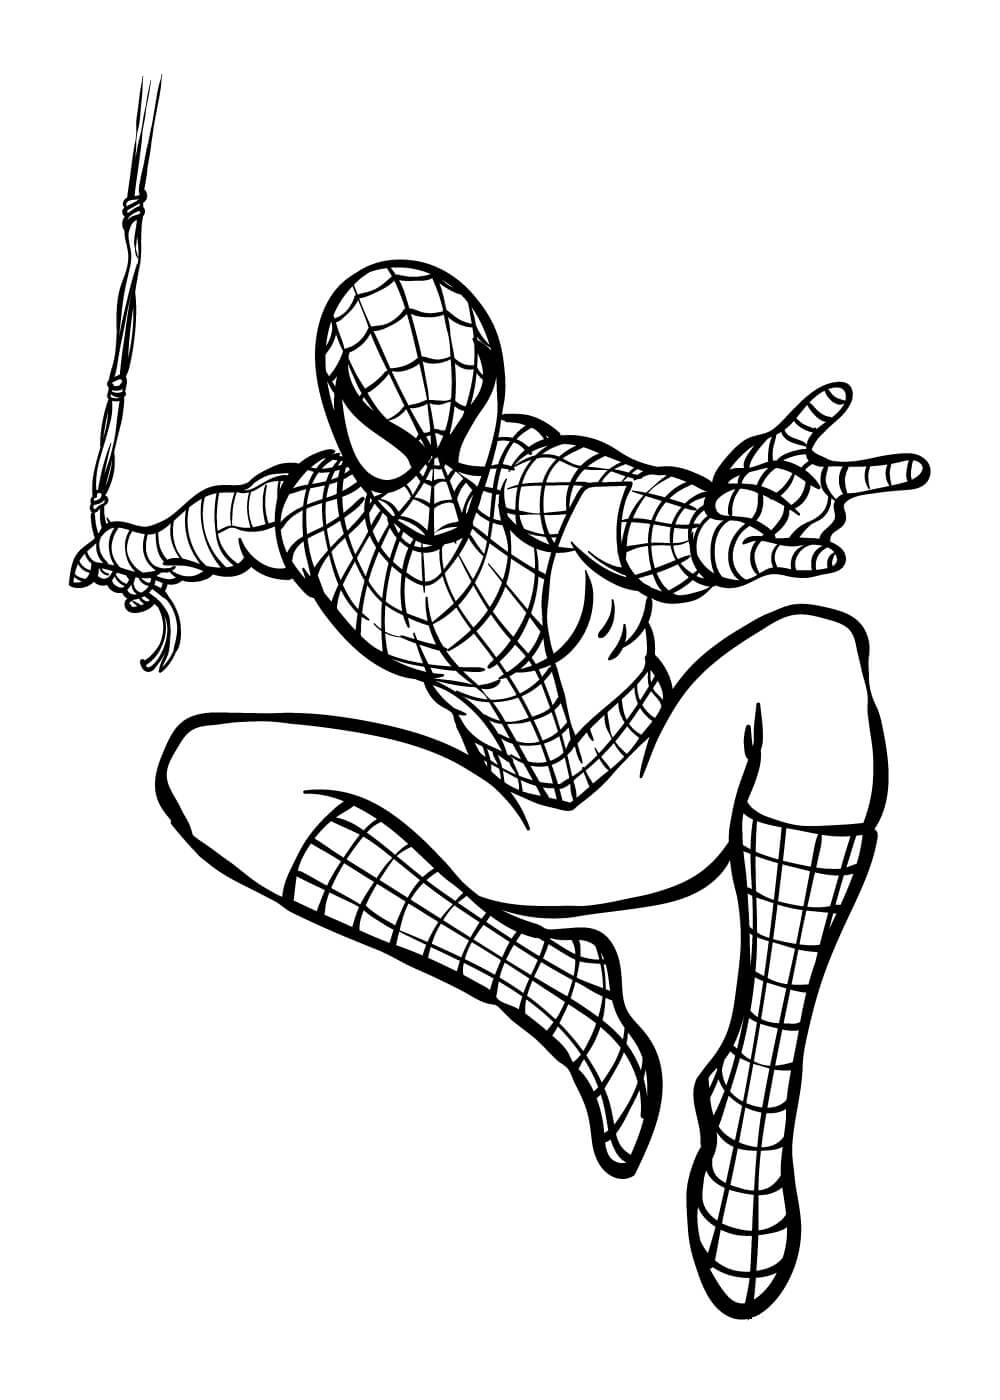 Spiderman Fantastique coloring page